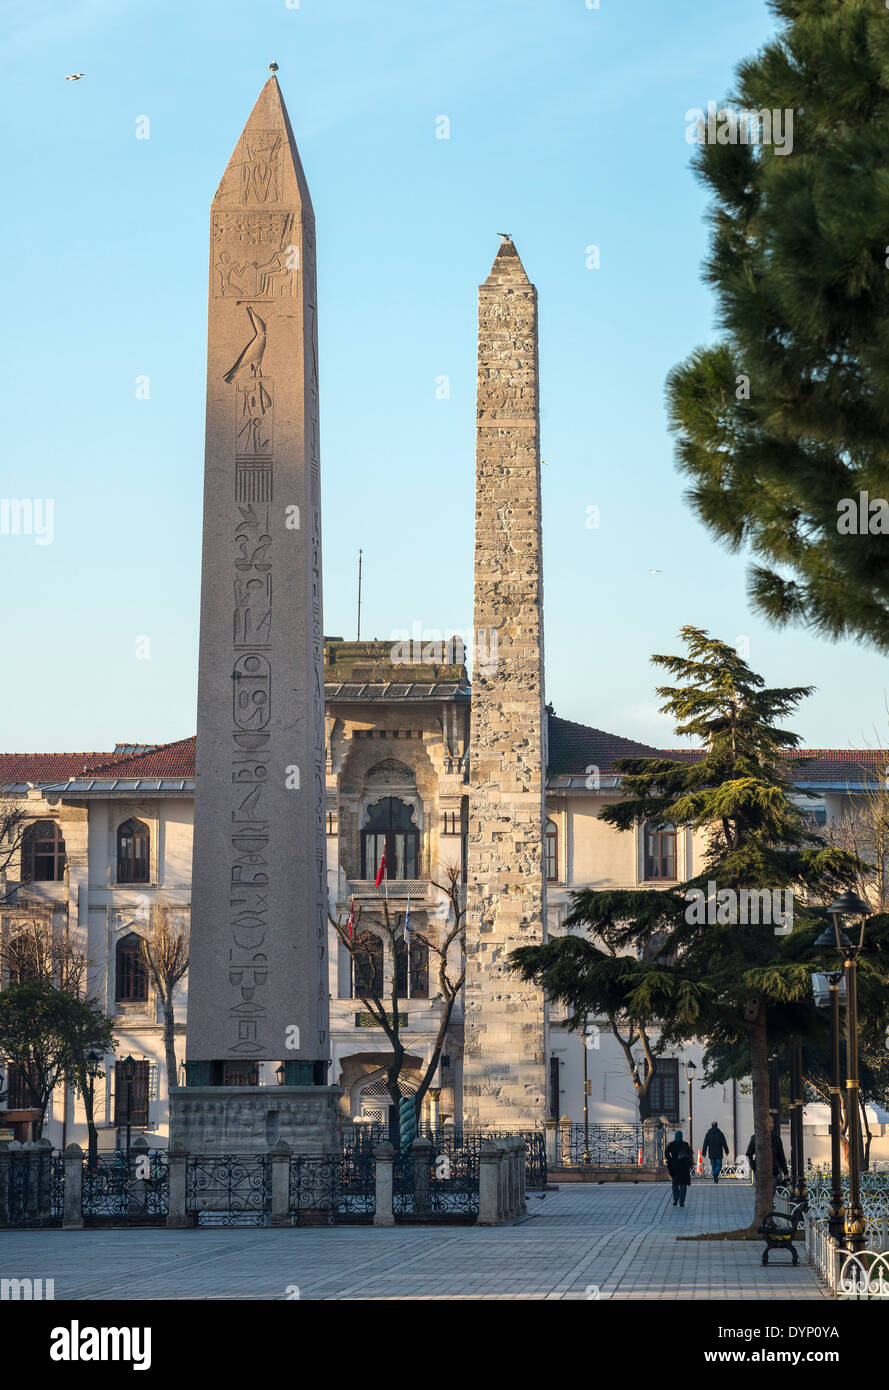 Das Hippodrom, mit Blick auf den ägyptischen Obelisken und der Spalte von Constantine, Sultanahmet, Istanbul, Türkei. Stockfoto